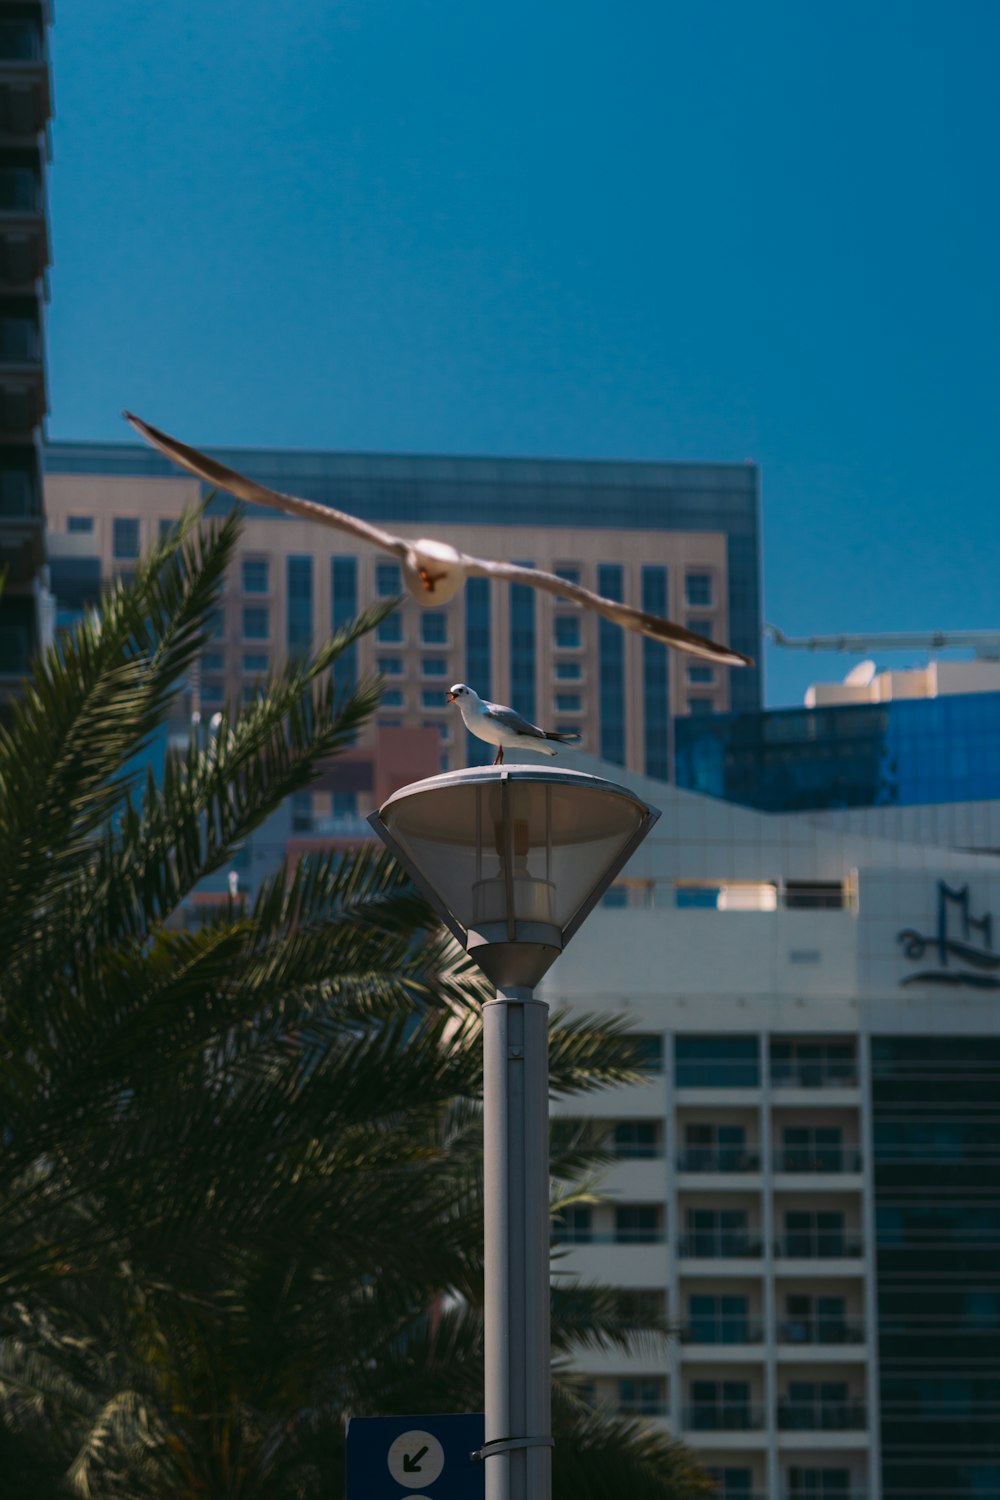 a bird is flying over a street light